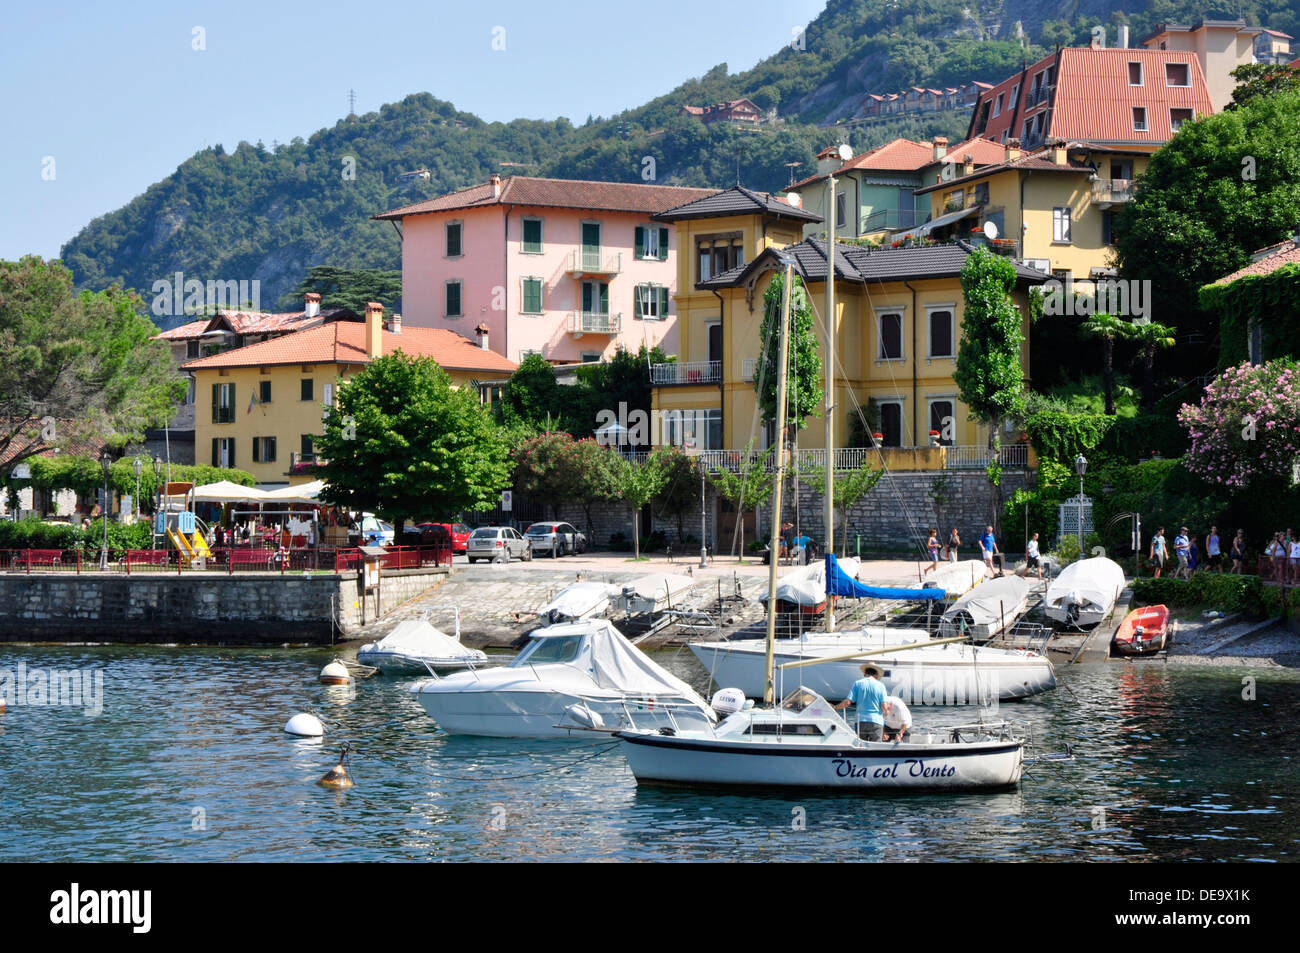 Italien - Comer See - Varenna - Ansicht Spaziergang am See - Dorfhäuser festgemachten Jachten - Reflexionen - - orange Dächer - Berge Stockfoto